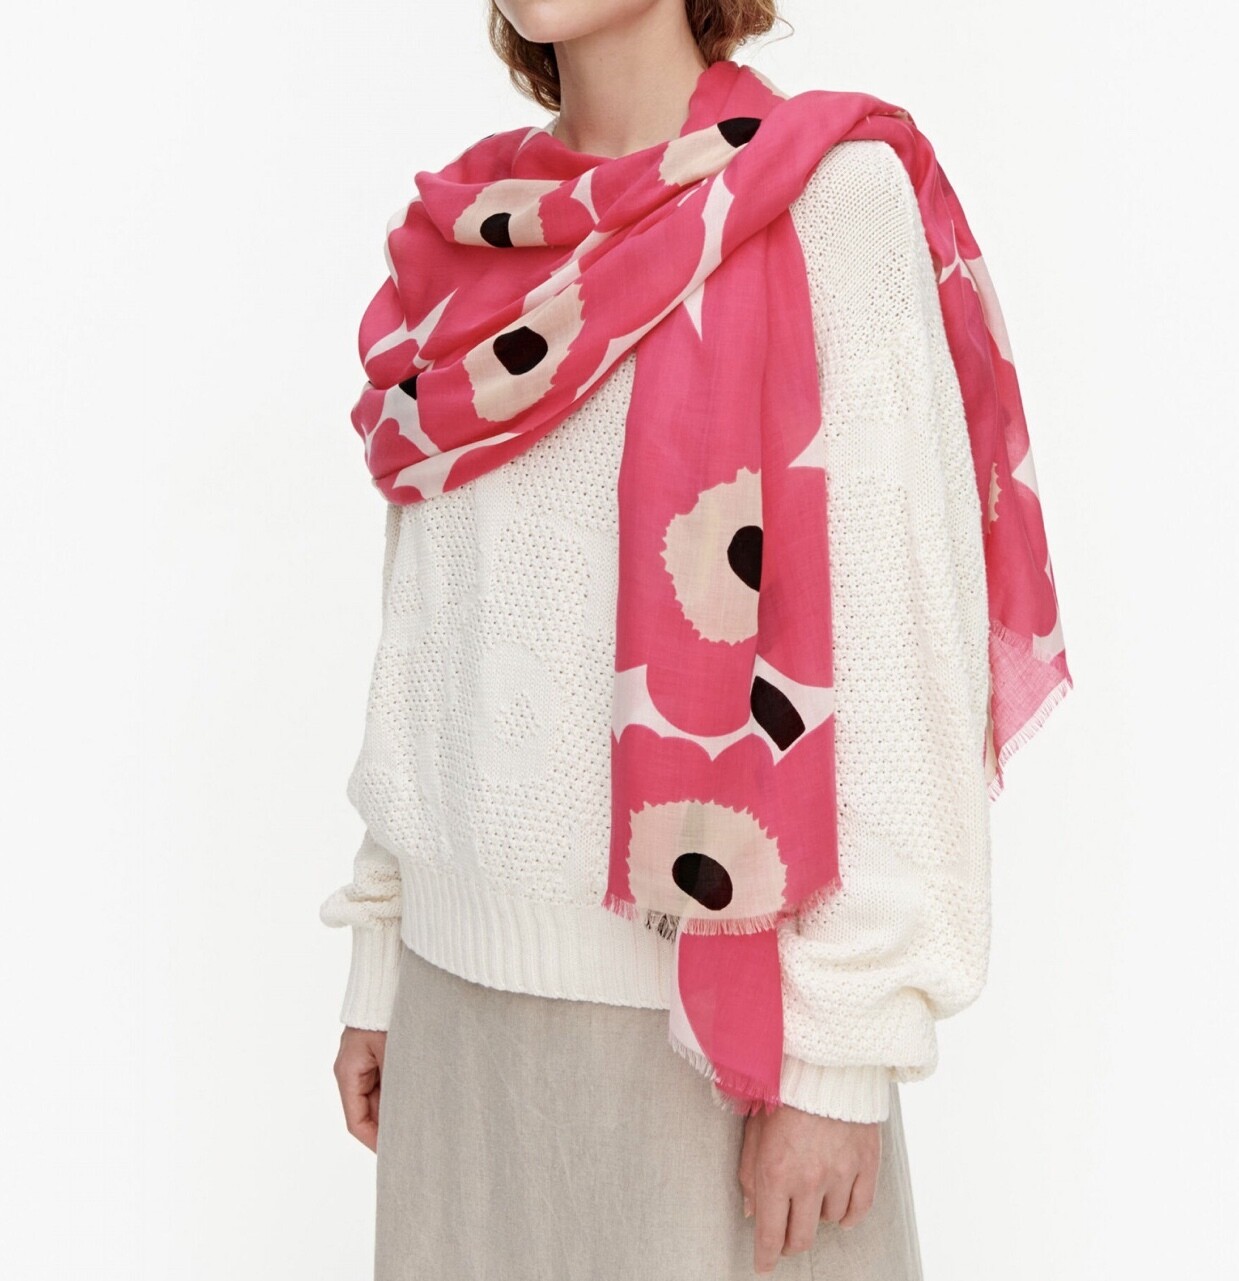 Merikaisla Pieni Unikko scarf, Marimekko scarf, pink unikko